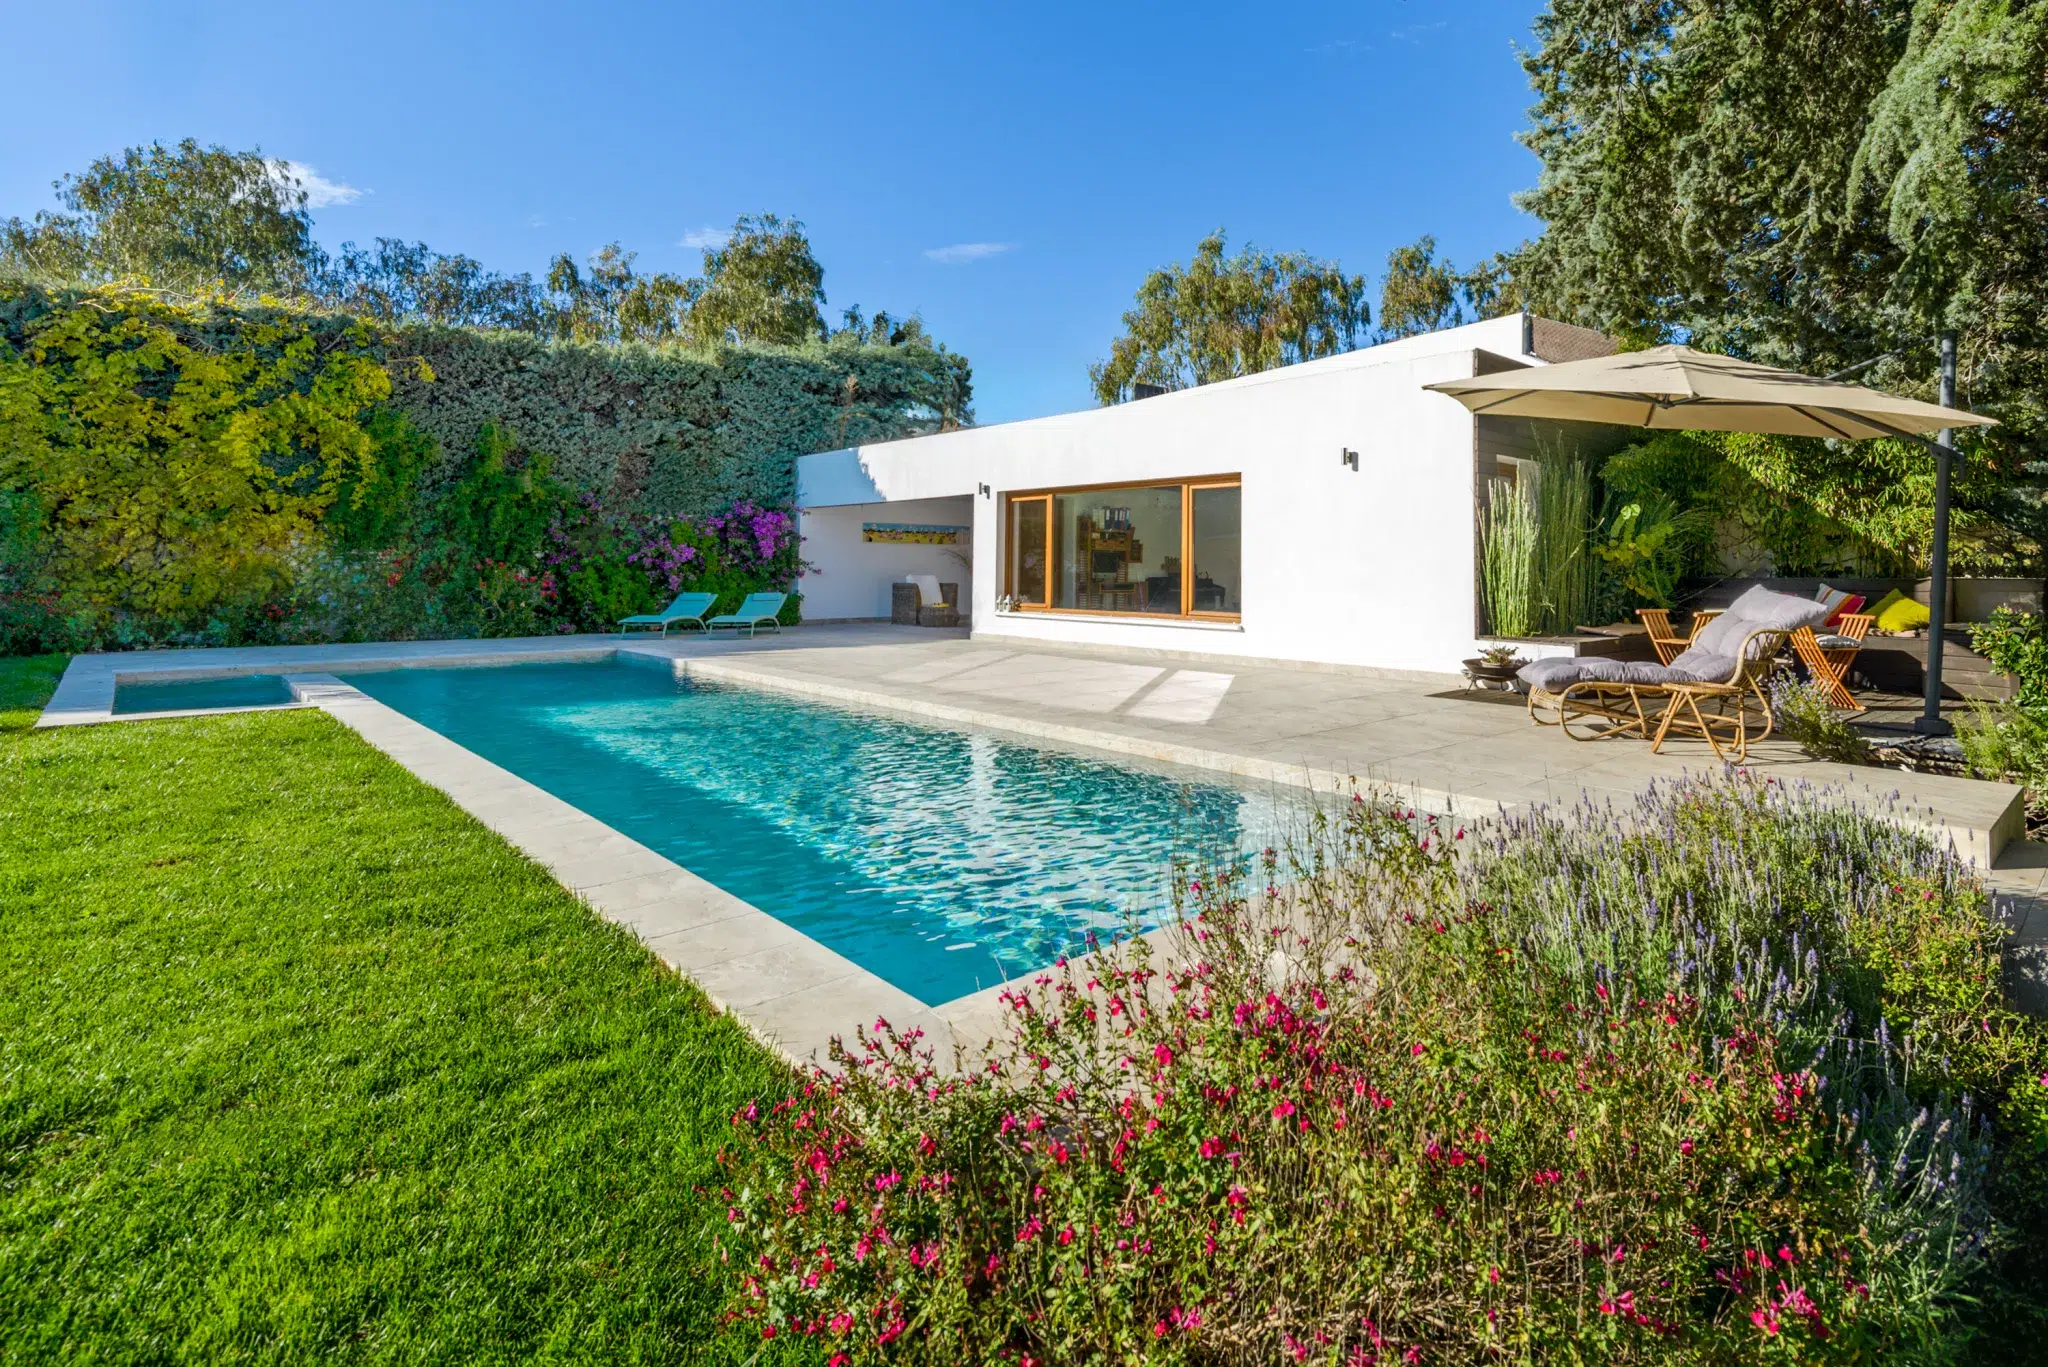 7 Consejos para fotografiar casa con piscina